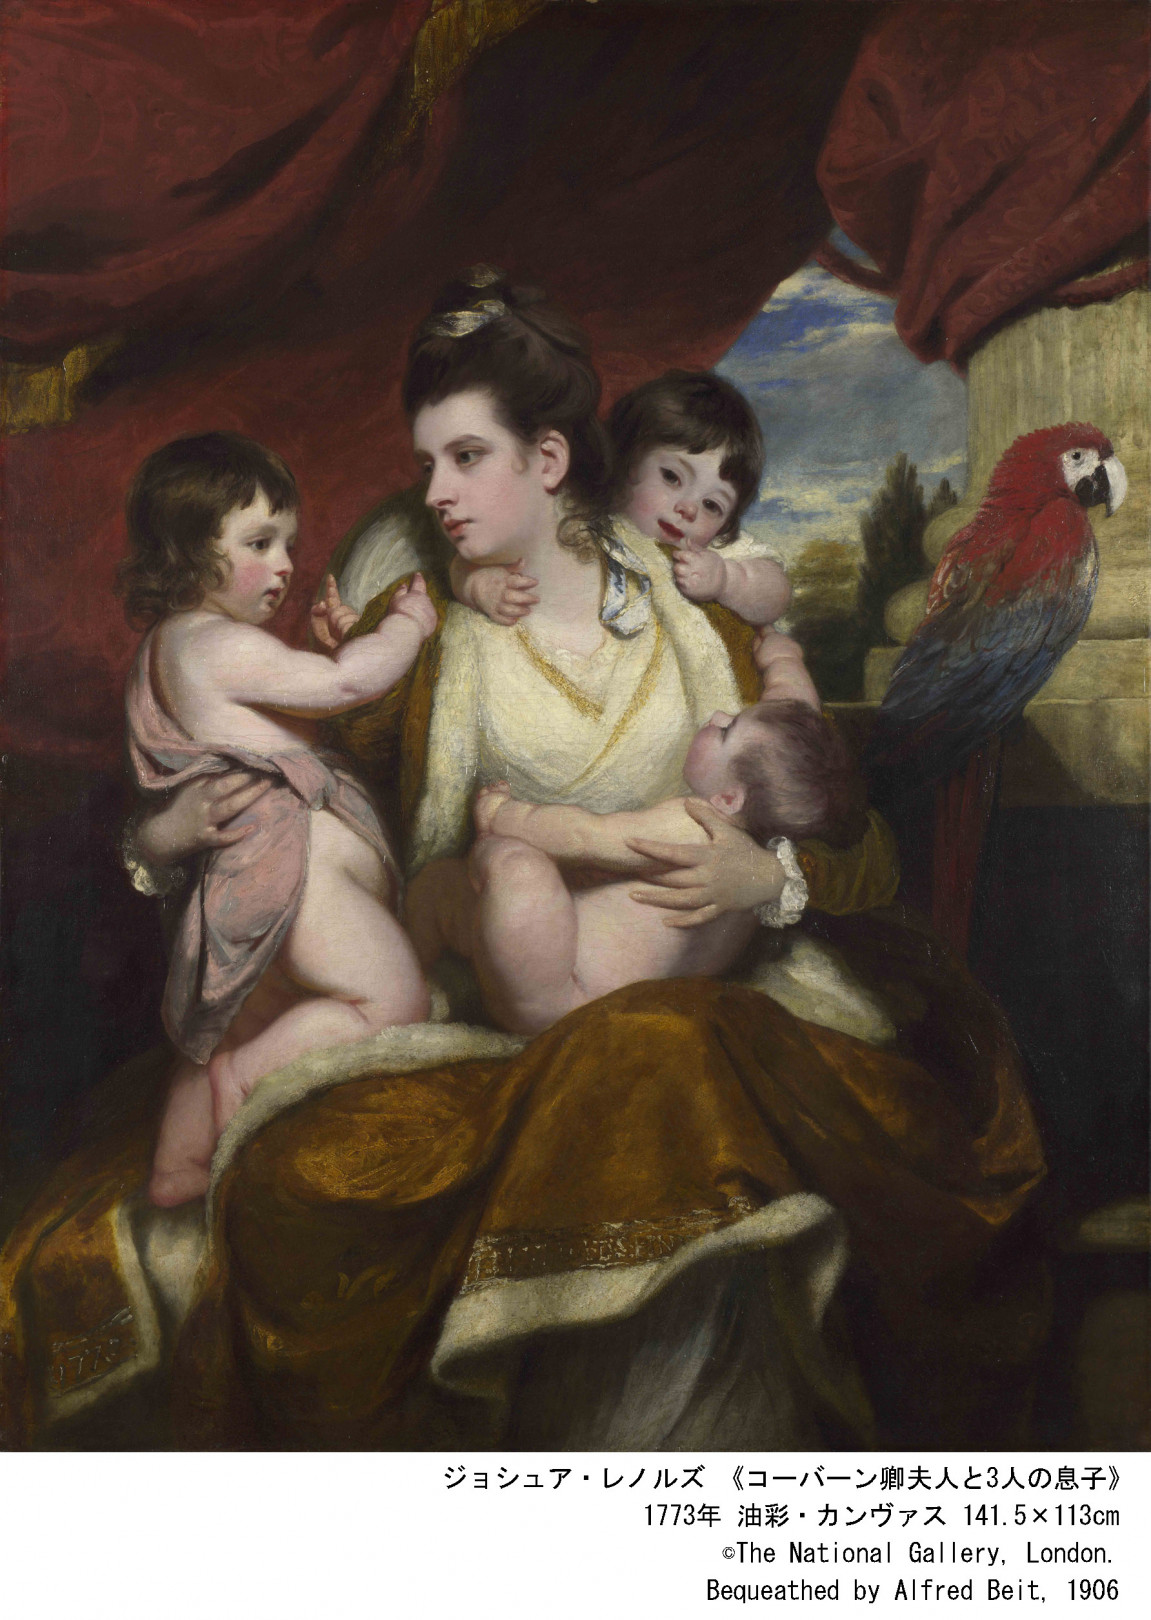 ジョシュア・レノルズ 《コーバーン卿夫人と3人の息子》 1773年 油彩・カンヴァス 141.5×113cm ©The National Gallery, London. Bequeathed by Alfred Beit, 1906